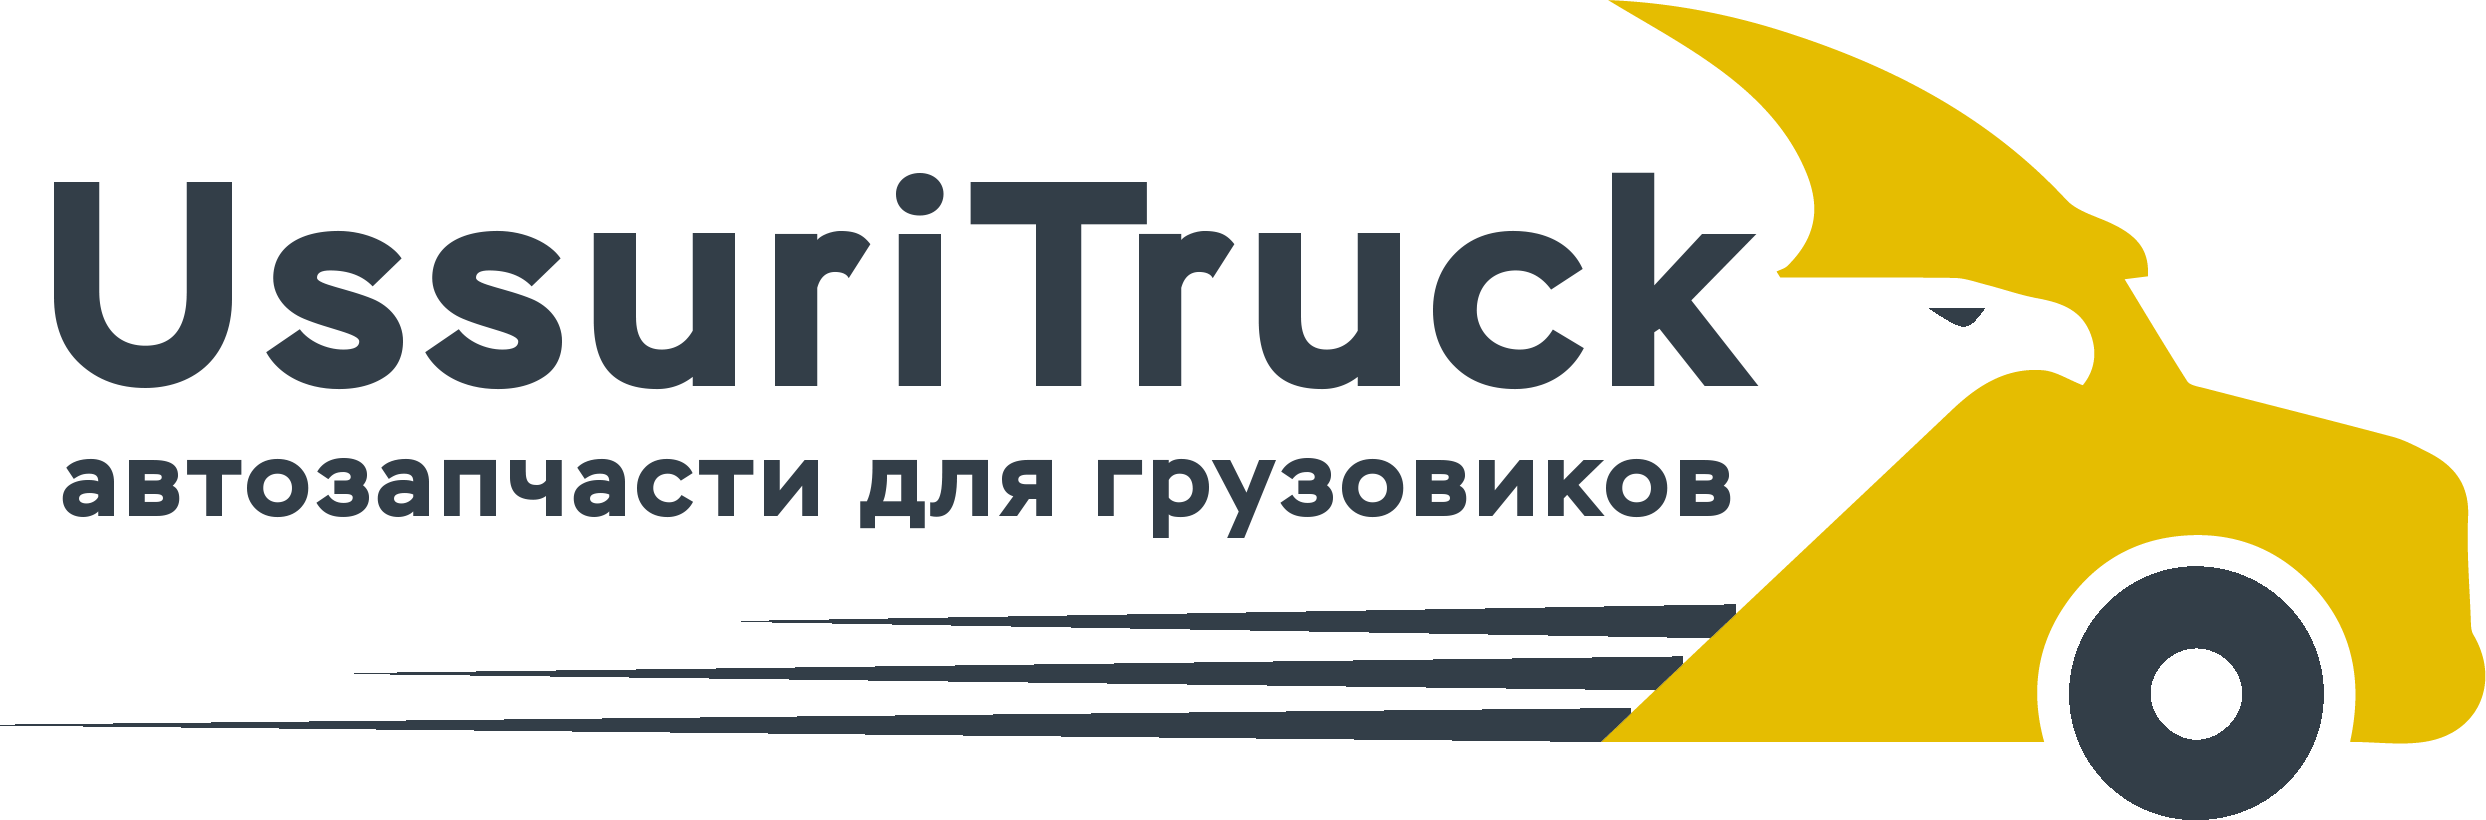 UssuriTruck - Автозапчасти для грузовых японский автомобилей - Город Уссурийск ussuritrucklogo.png